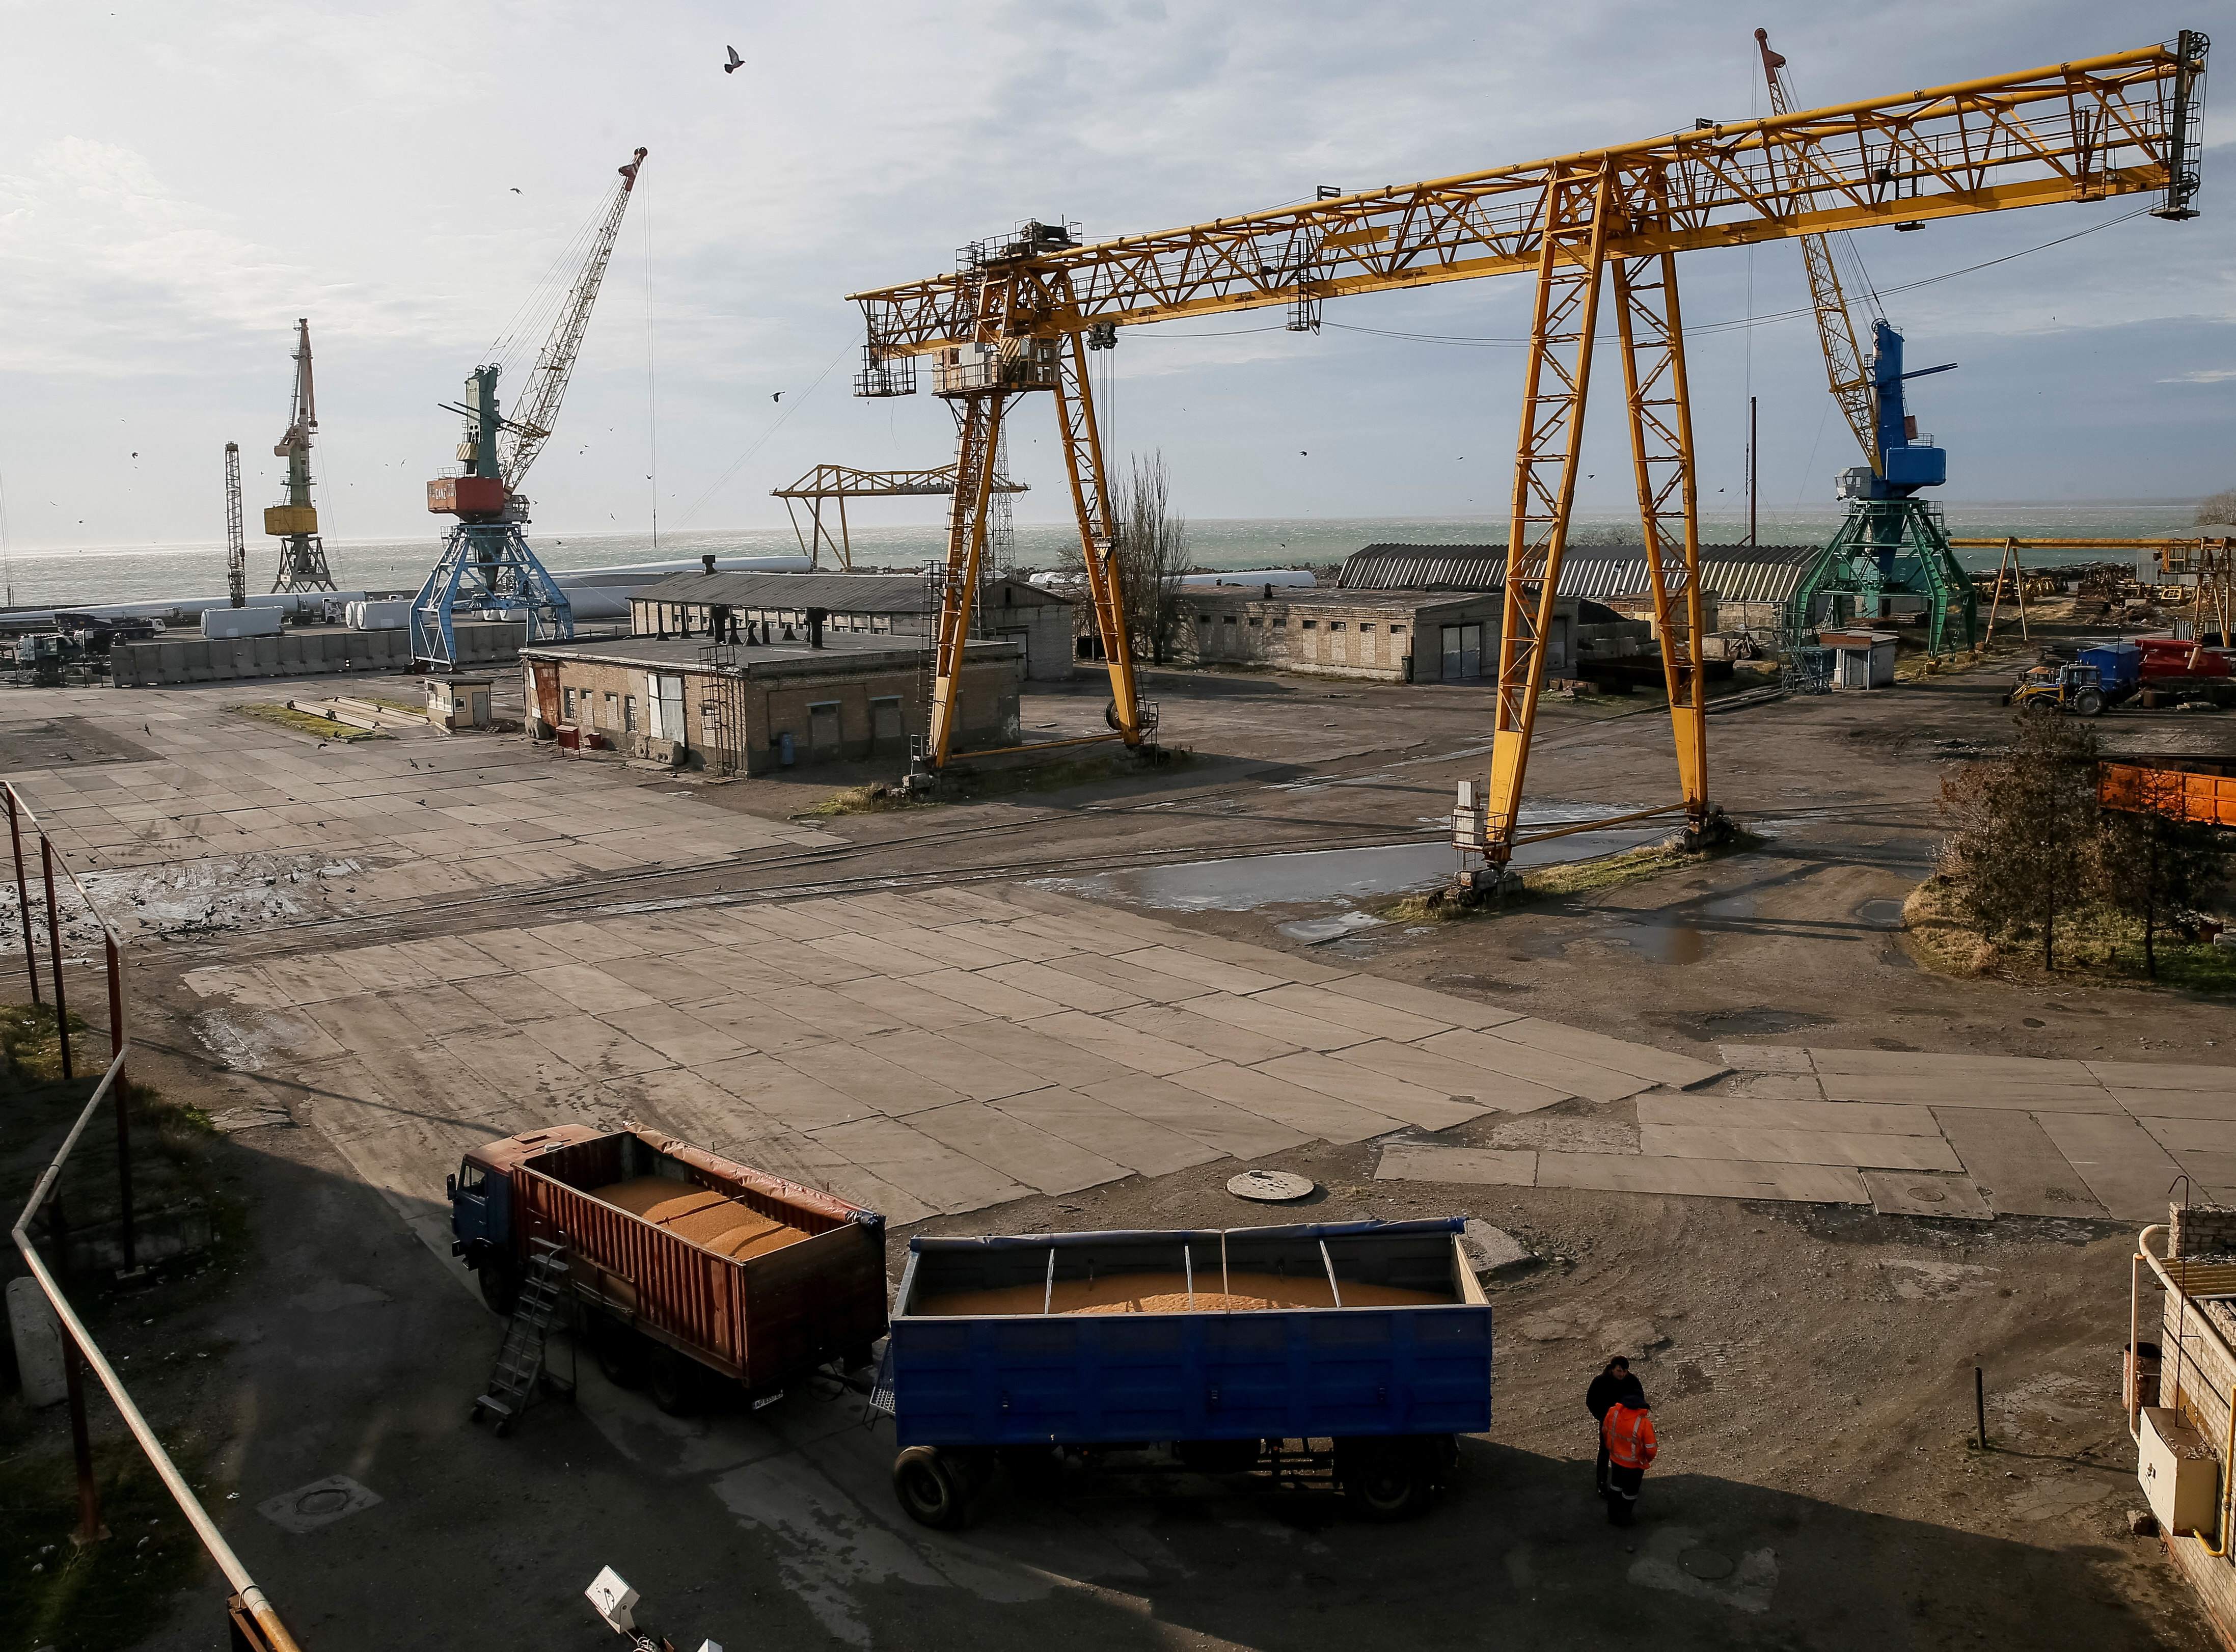 : Un camión con granos y grúas en el puerto marítimo de Azov en Berdyansk, Ucrania, el 30 de noviembre de 2018. Foto tomada el 30 de noviembre de 2018. (REUTERS/Gleb Garanich)